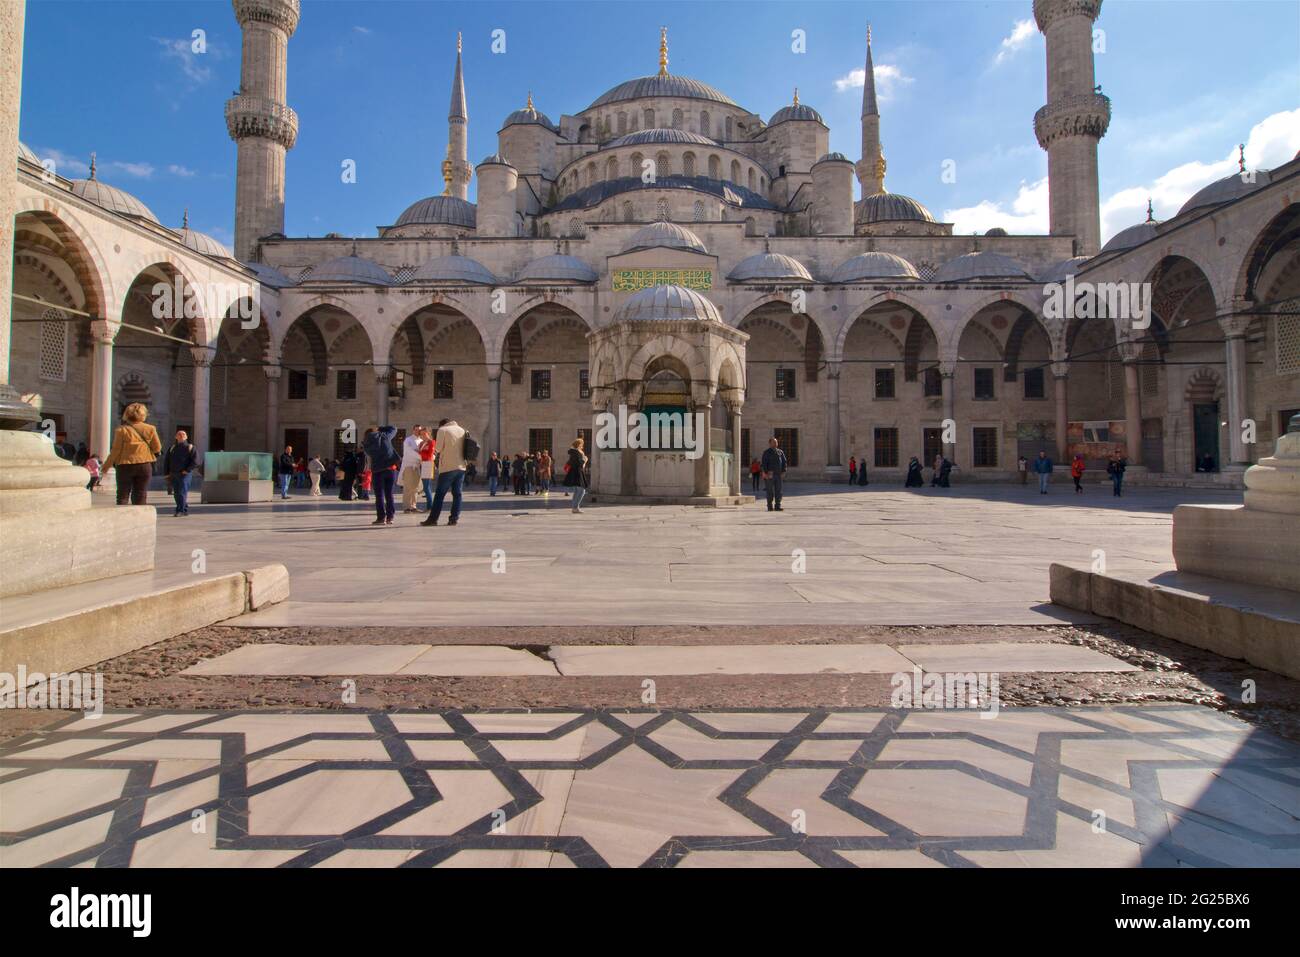 Mosquée Sultan Ahmed (turc : Sultan Ahmet Camii), également connue sous le nom de Mosquée bleue. Une mosquée du vendredi de l'époque ottomane située à Istanbul, en Turquie. Lieu de culte et attraction touristique. Banque D'Images